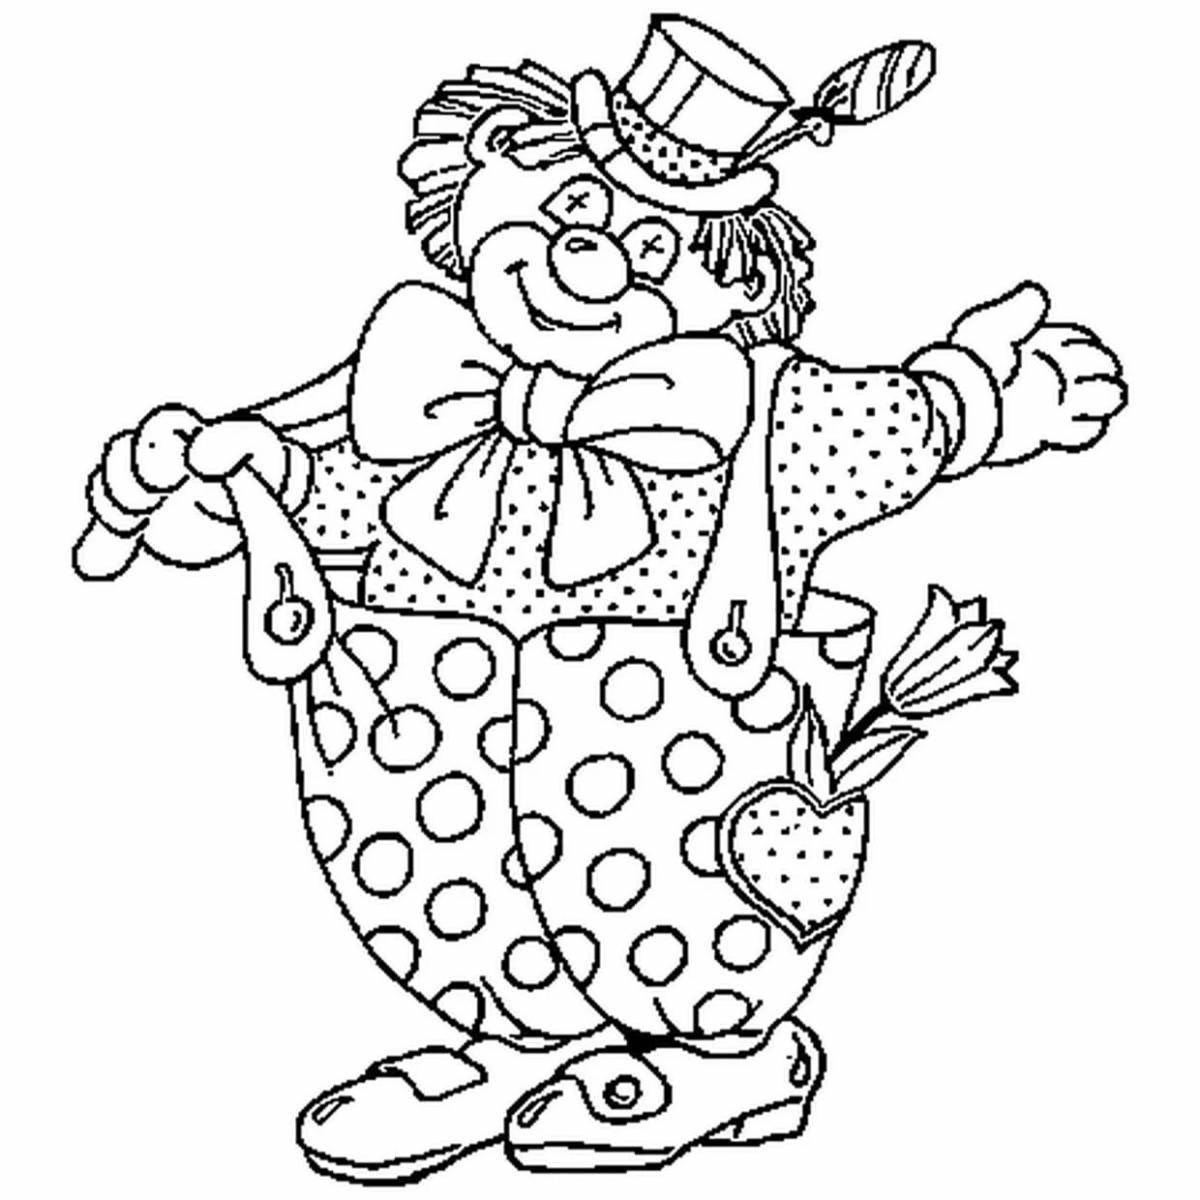 Привлекательная раскраска клоуна для детей